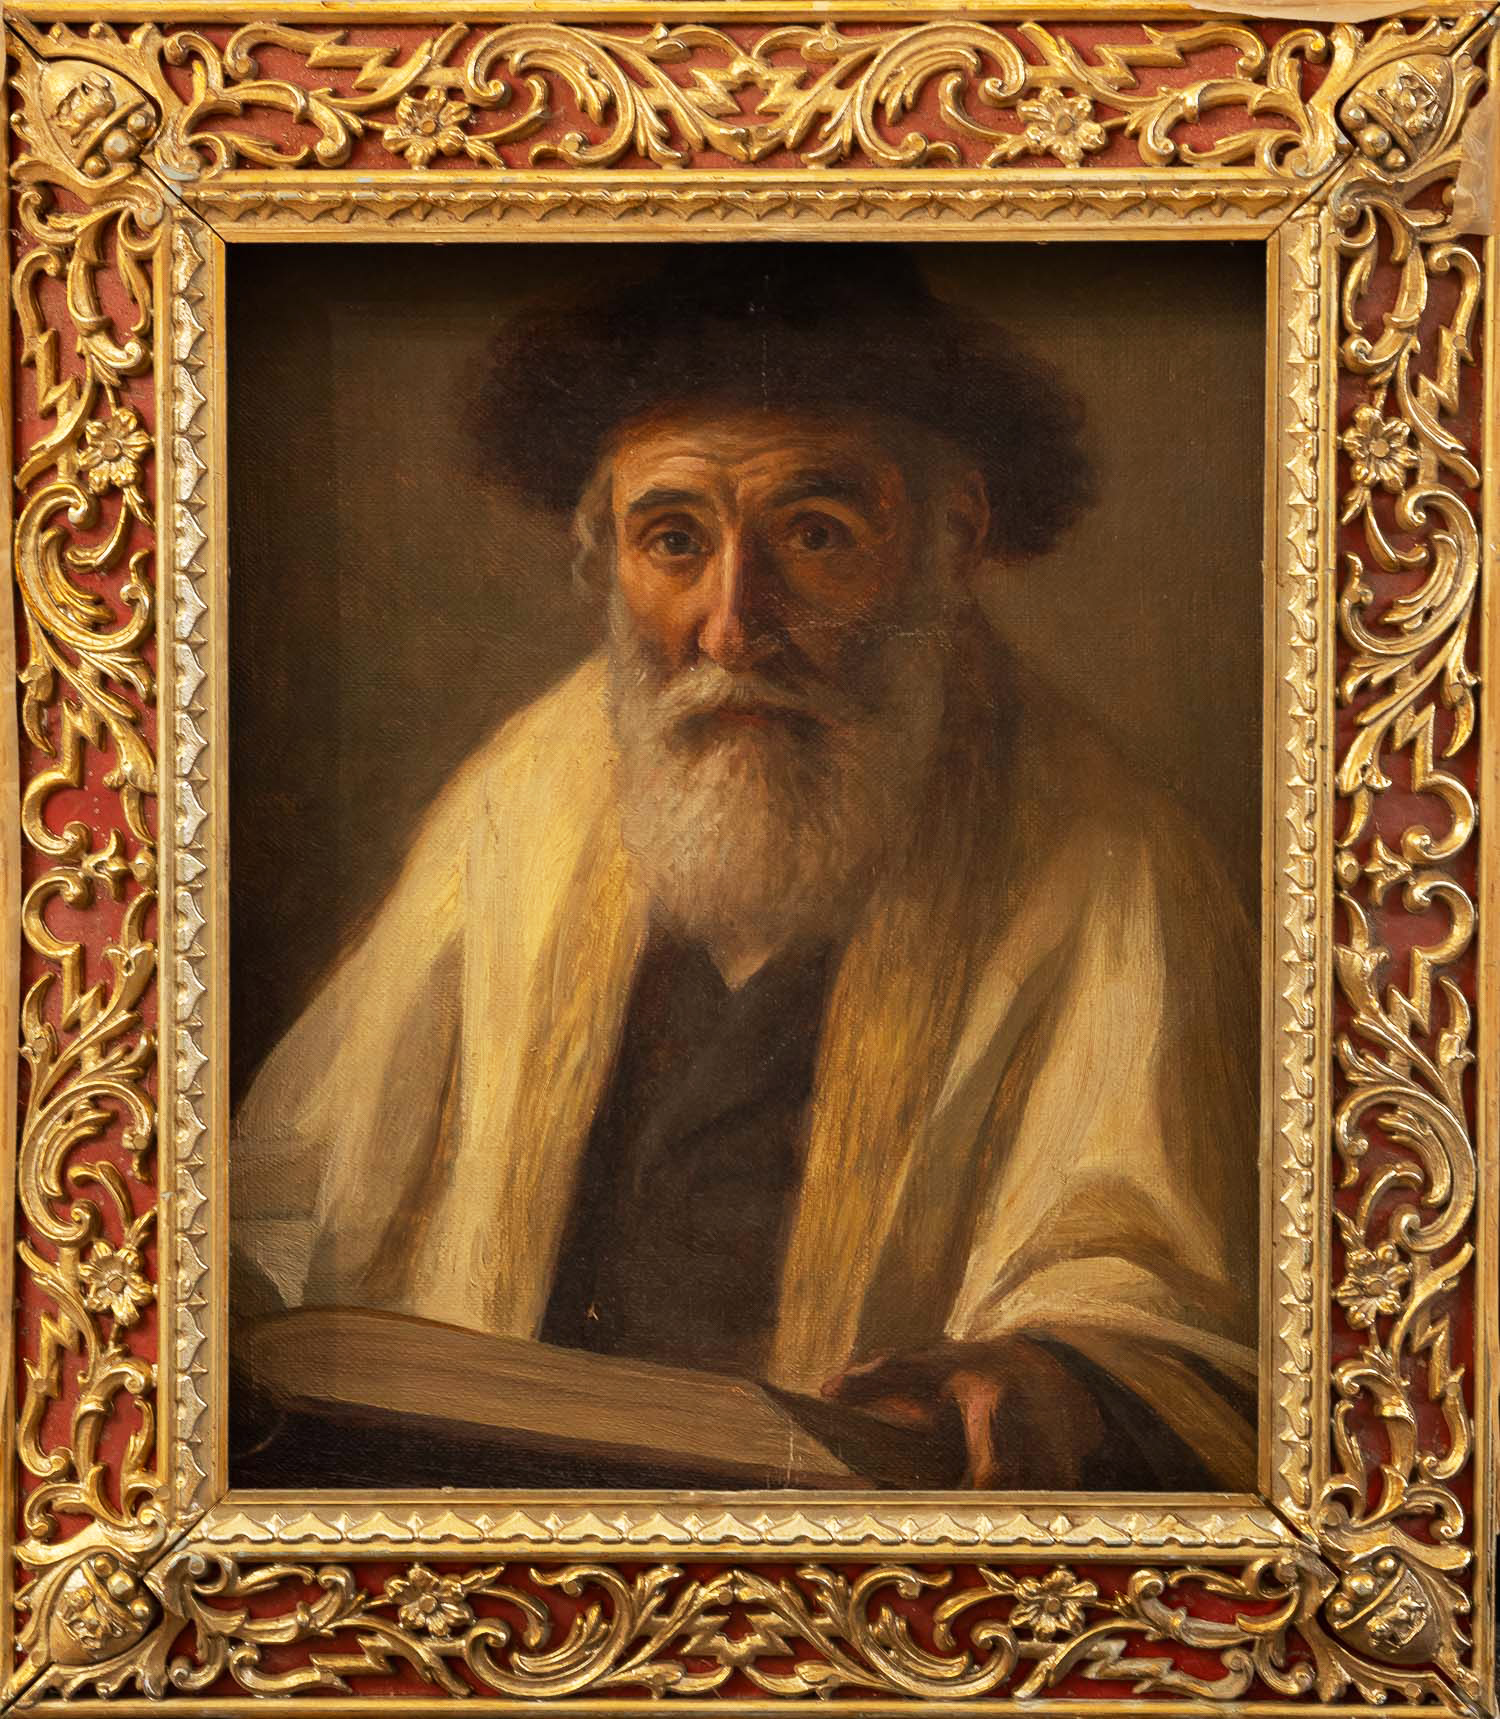 Luis Sevilla (1800-1900)